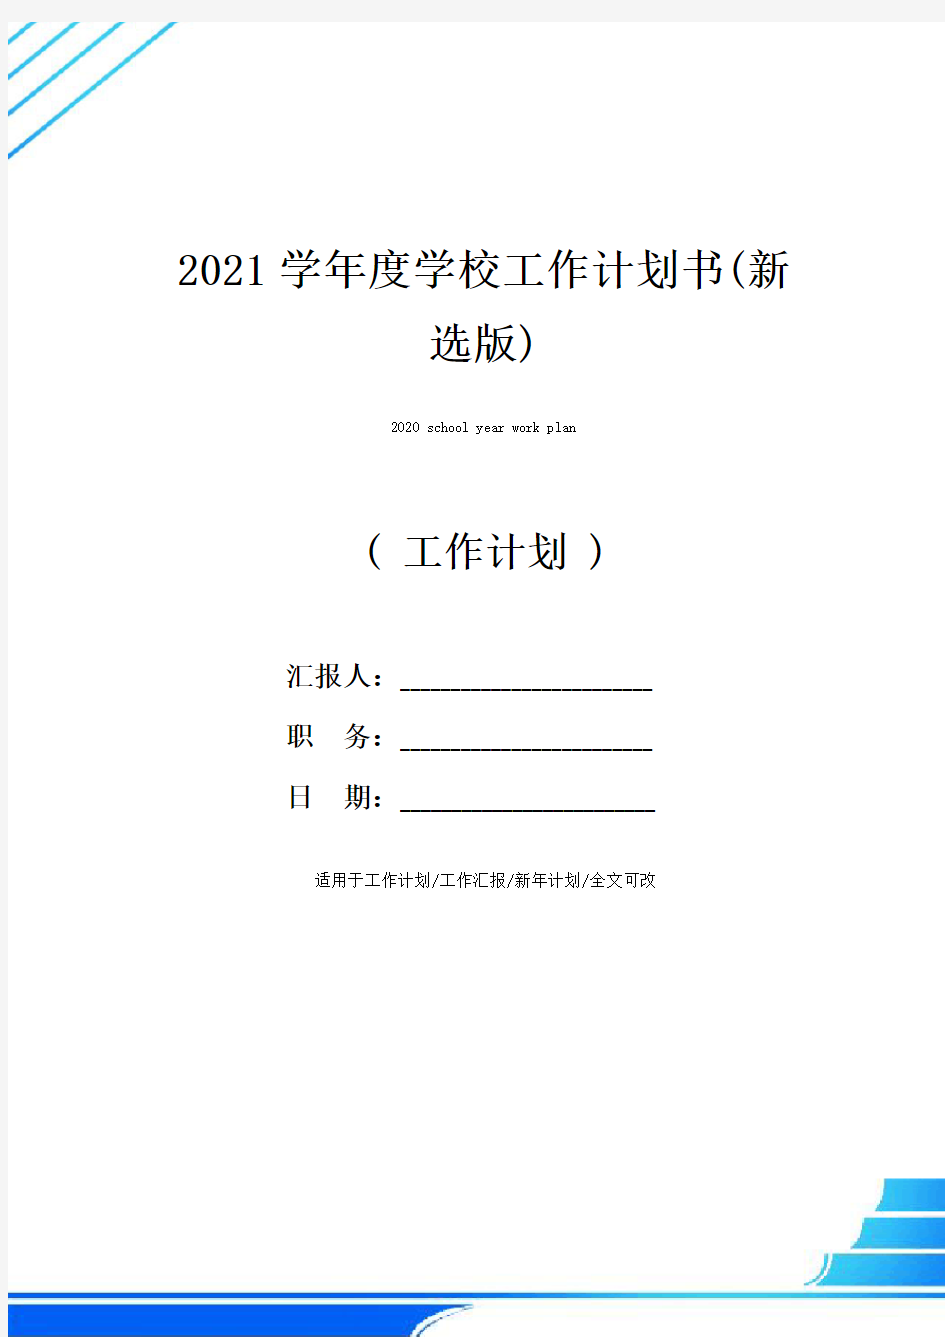 2021学年度学校工作计划书(新选版)